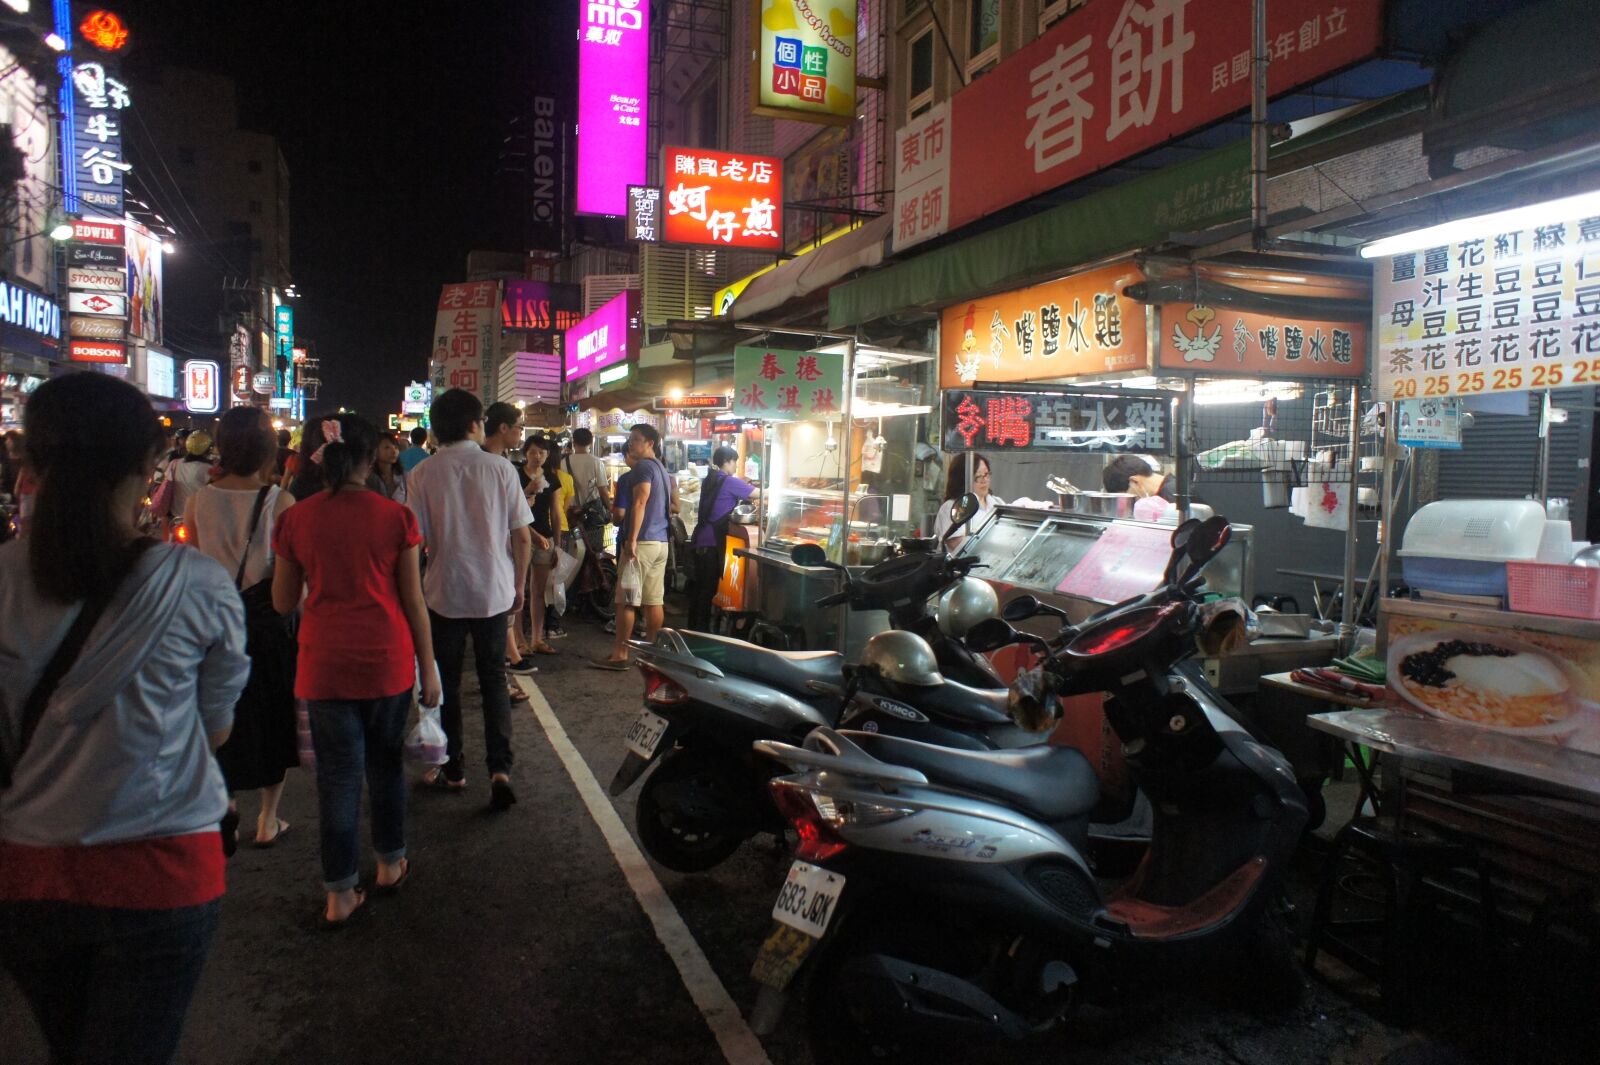 Sony NEX-5C + Sony E 16mm F2.8 sample photo. City, taiwan, the night photography